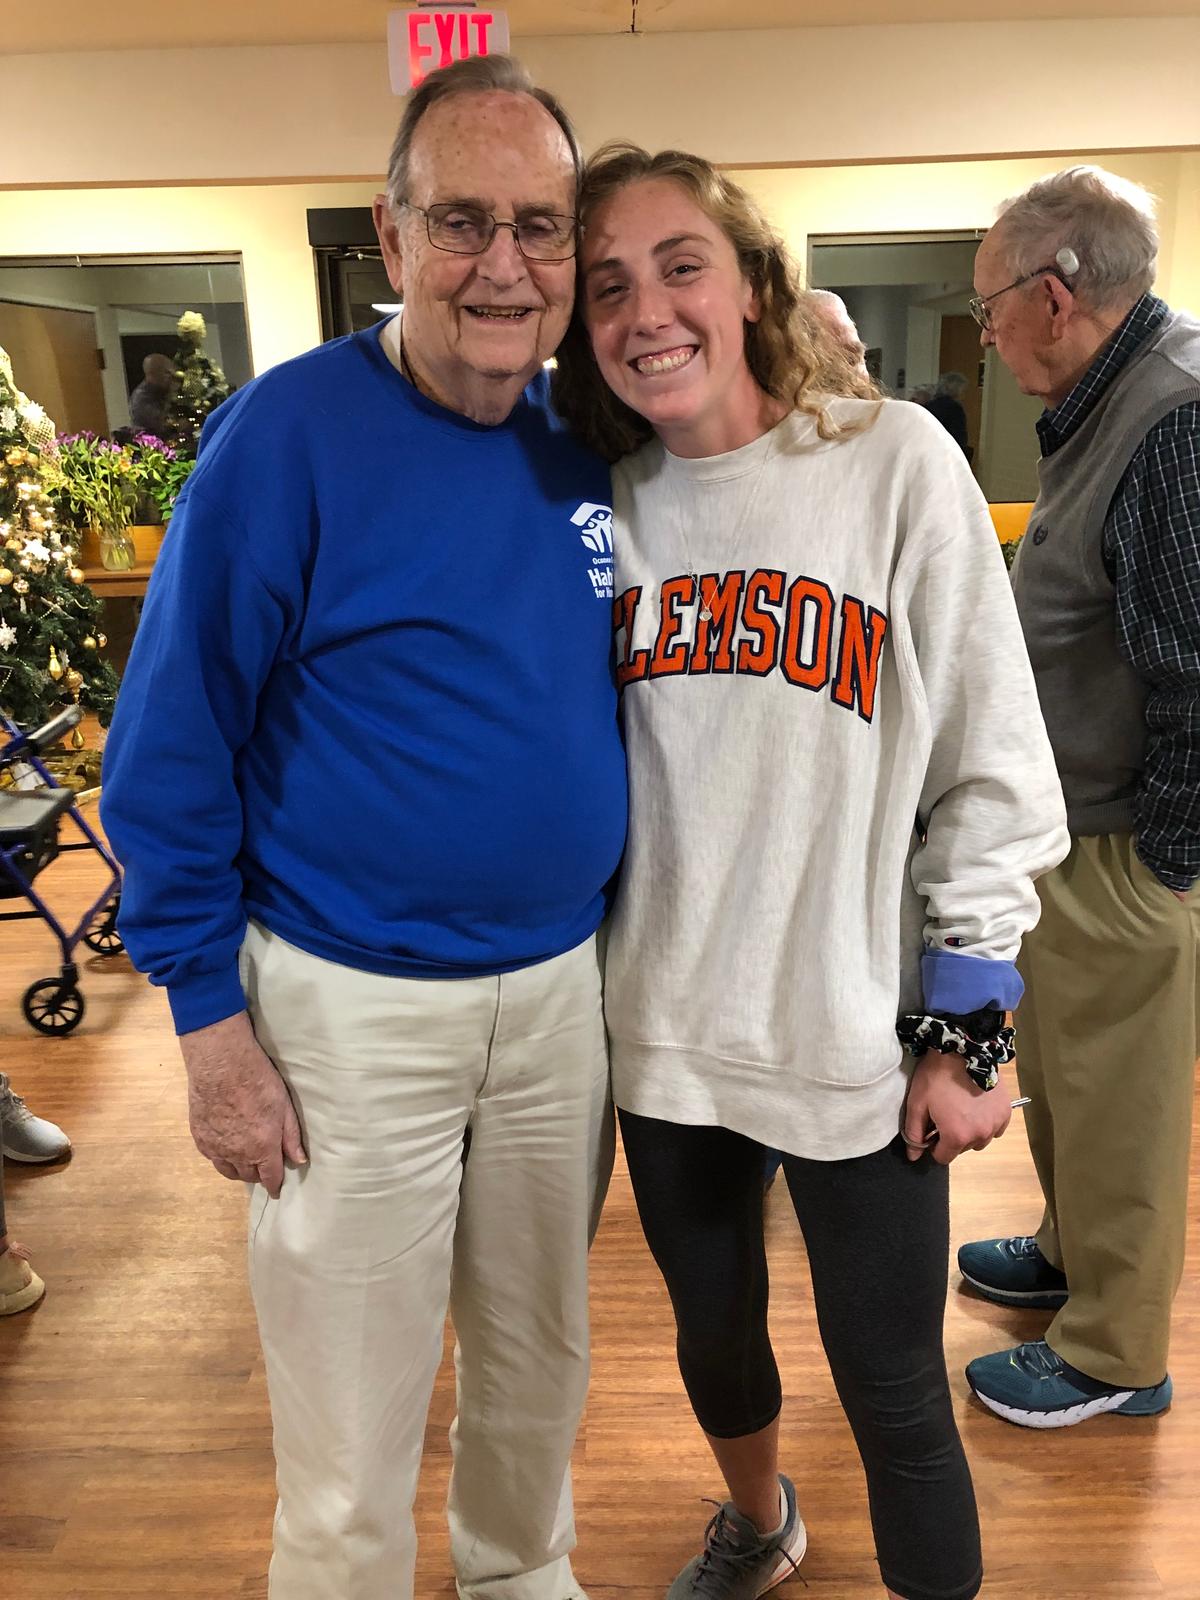 Student athlete Morgan Wittrock visited seniors before the lockdowns. (Clemson University)